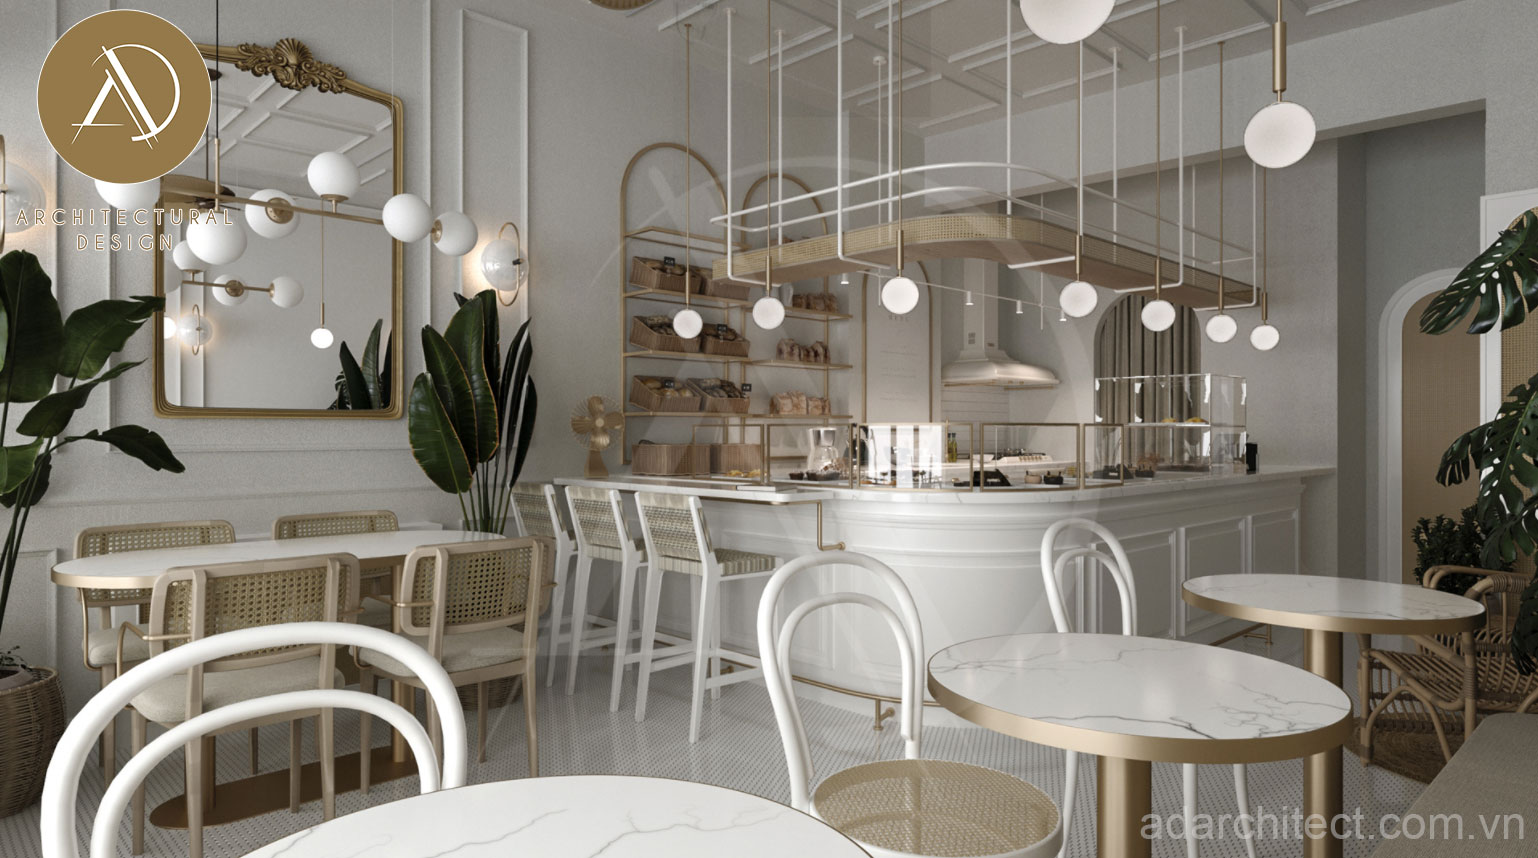 Thiết kế cửa hàng bánh ngọt: thiết kế không gian nhỏ gọn, bố trí được nhiều bàn